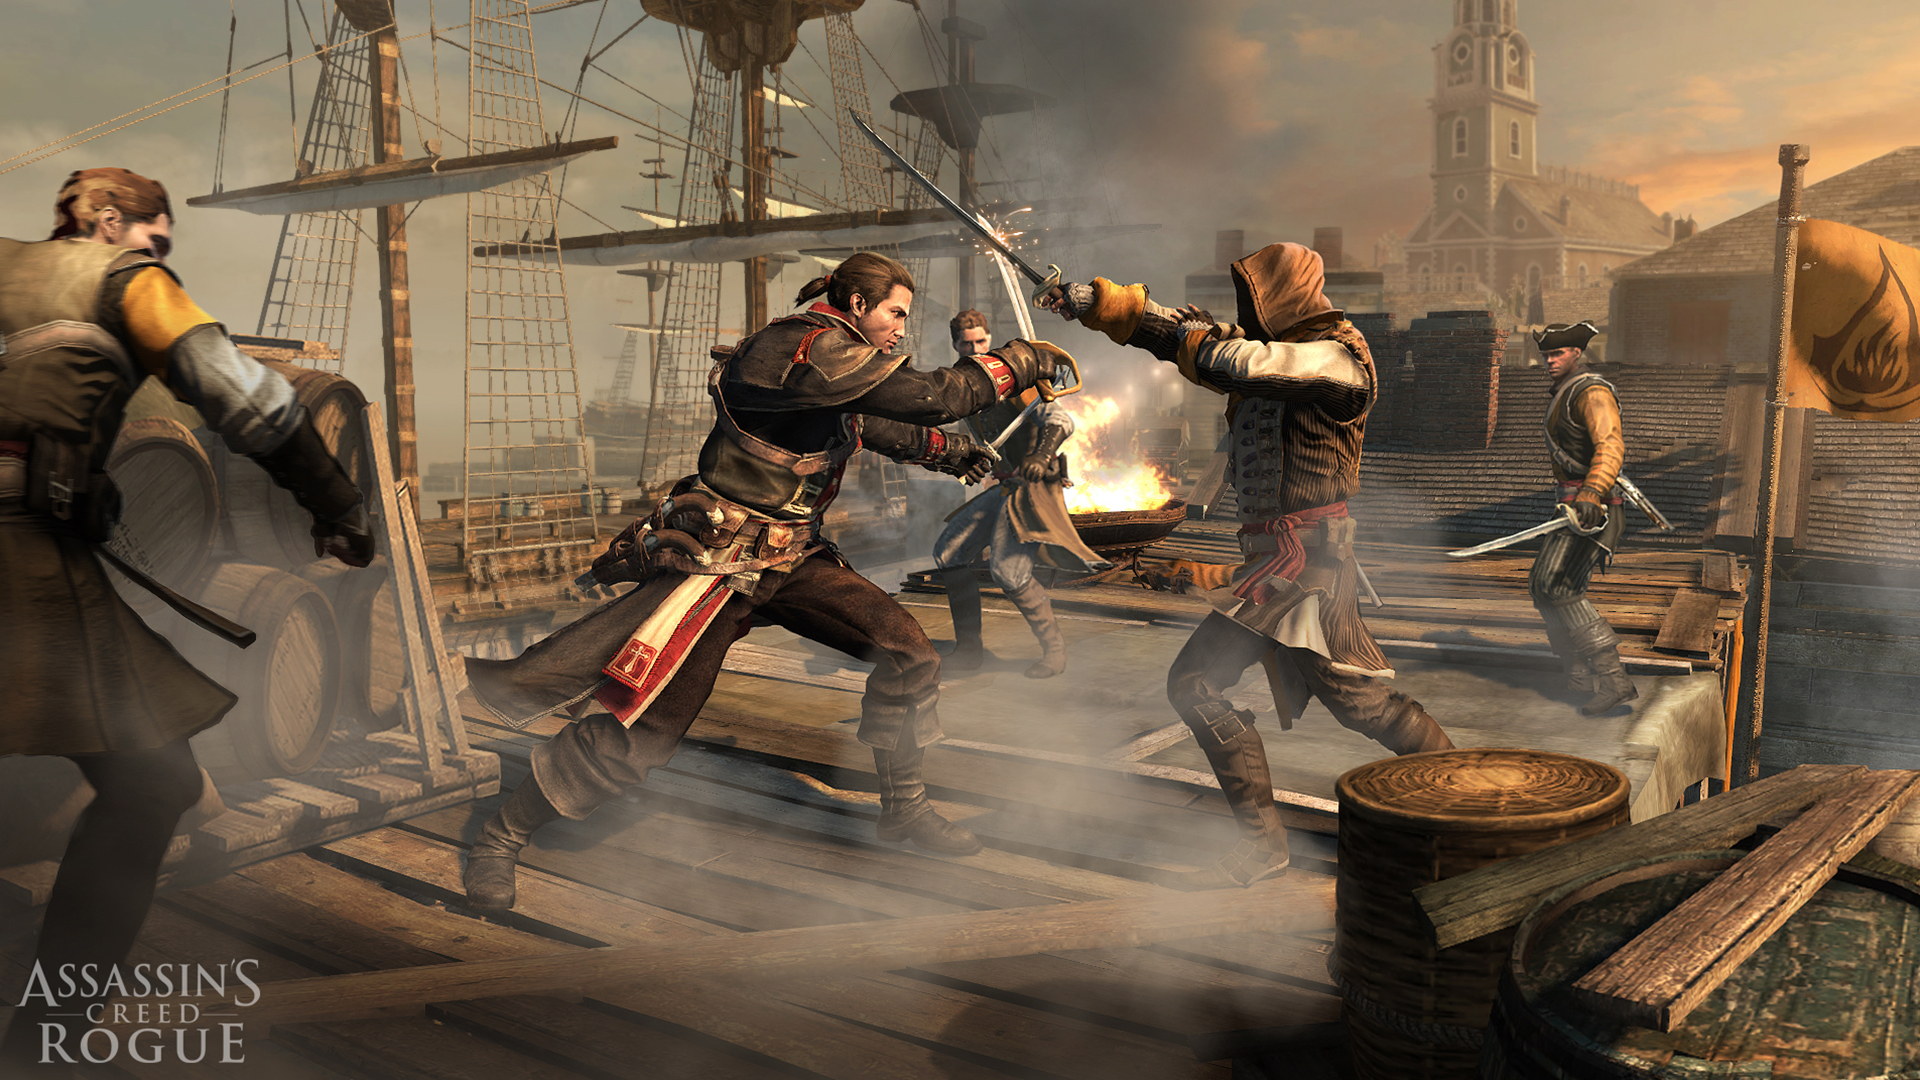 Immagine pubblicata in relazione al seguente contenuto: Assassin's Creed Rogue: guarda gli screenshot e il trailer pi recente | Nome immagine: news21598_Assassin-s- Creed-Rogue-Screenshot_1.jpg